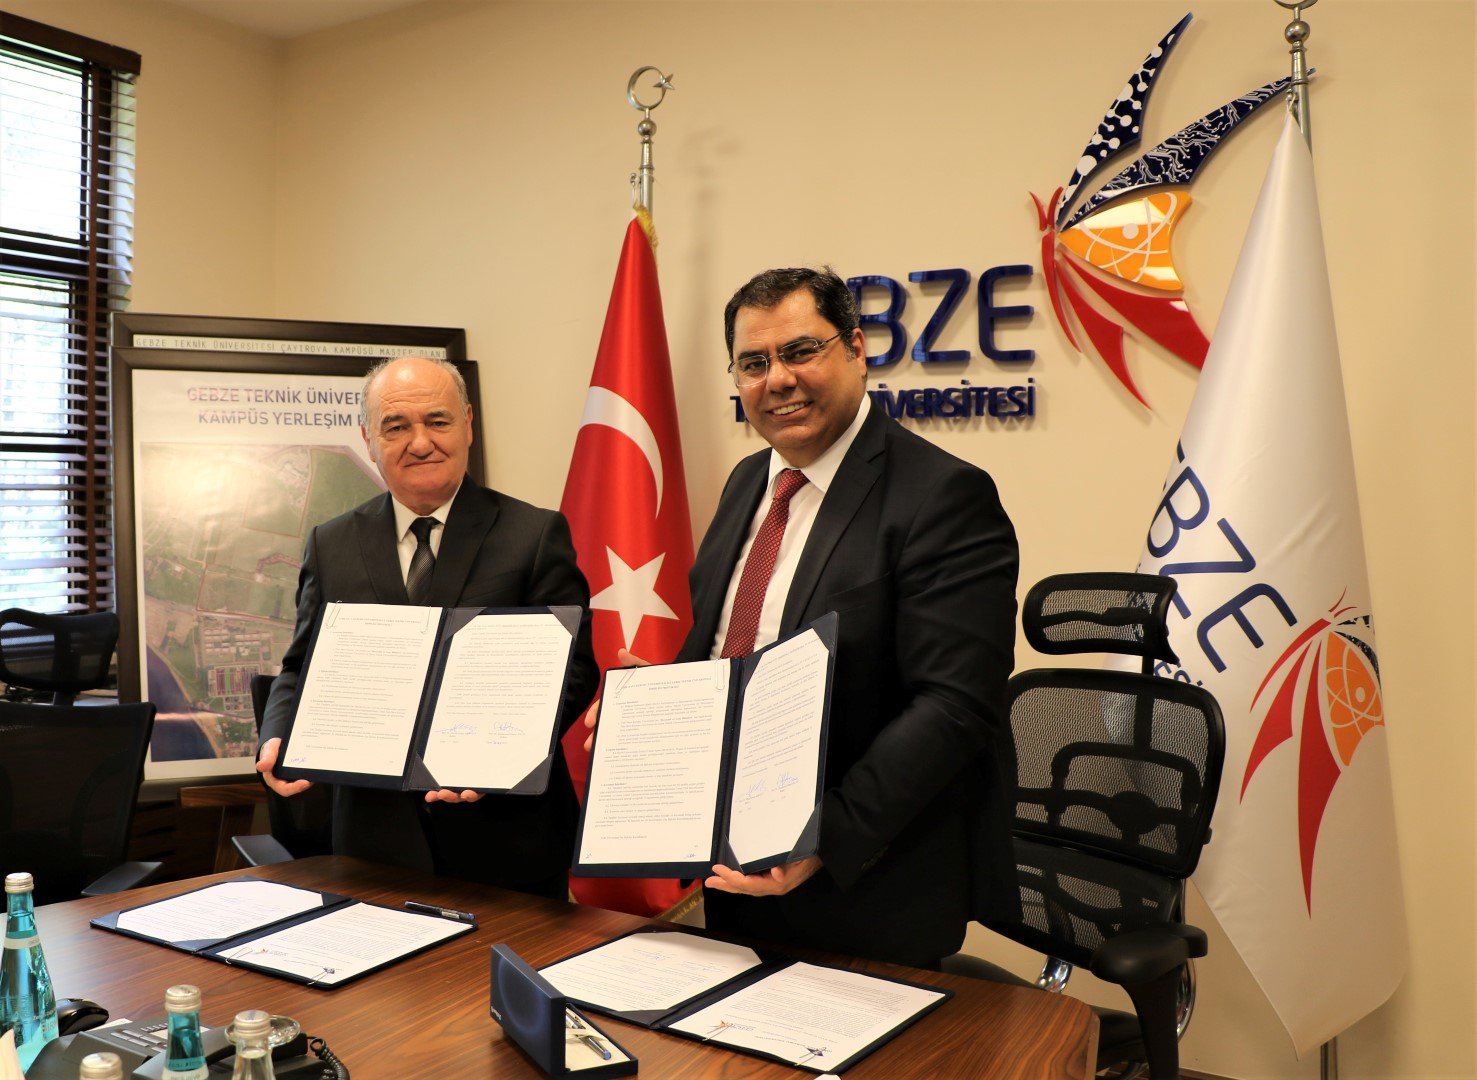 GTÜ ve Türk Hava Kurumu Üniversitesi birlikte çalışacak